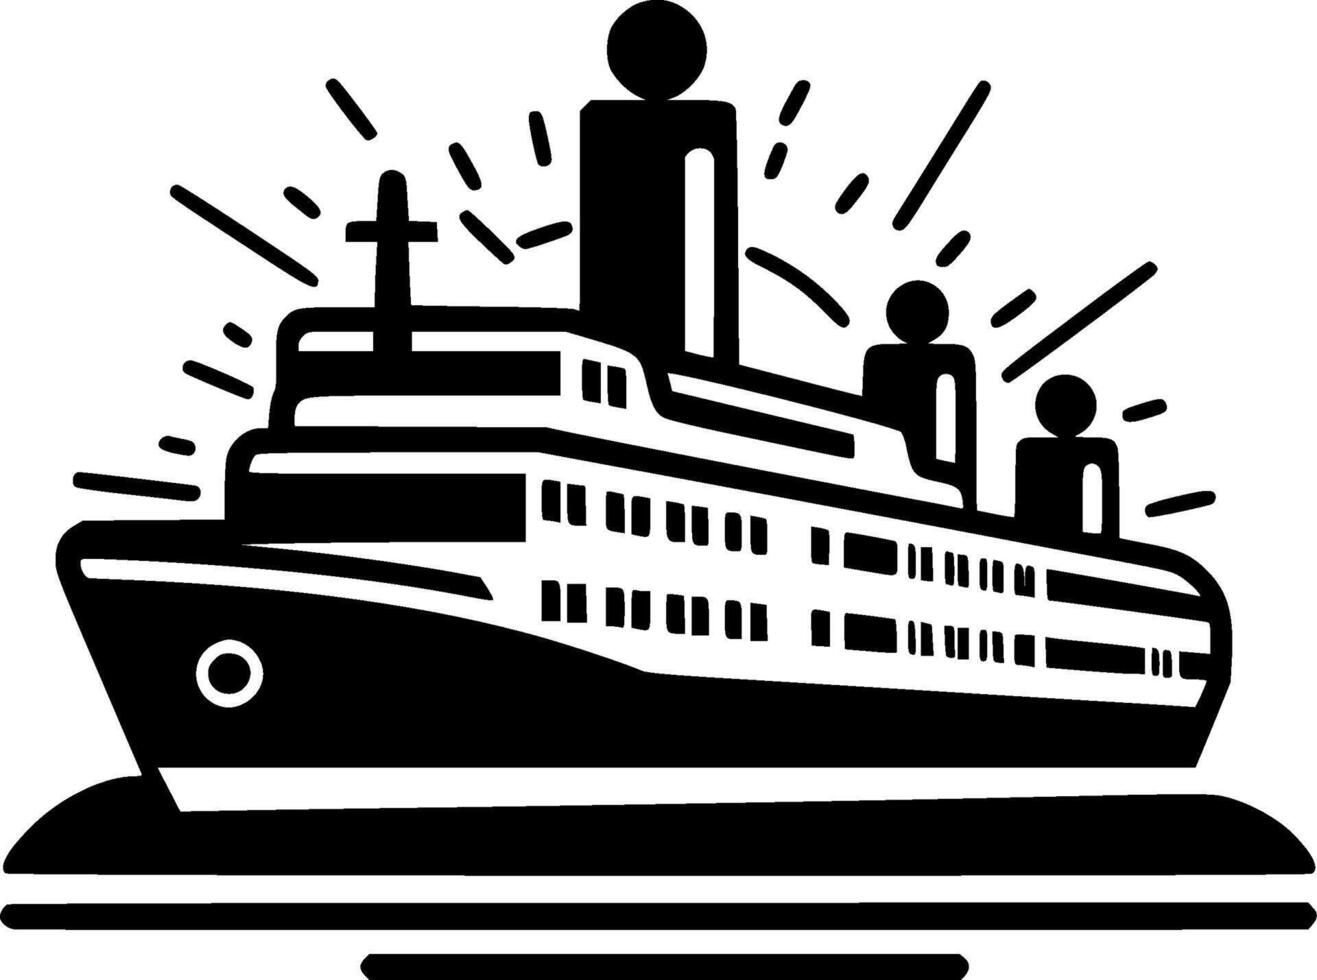 cruzeiro - Preto e branco isolado ícone - vetor ilustração